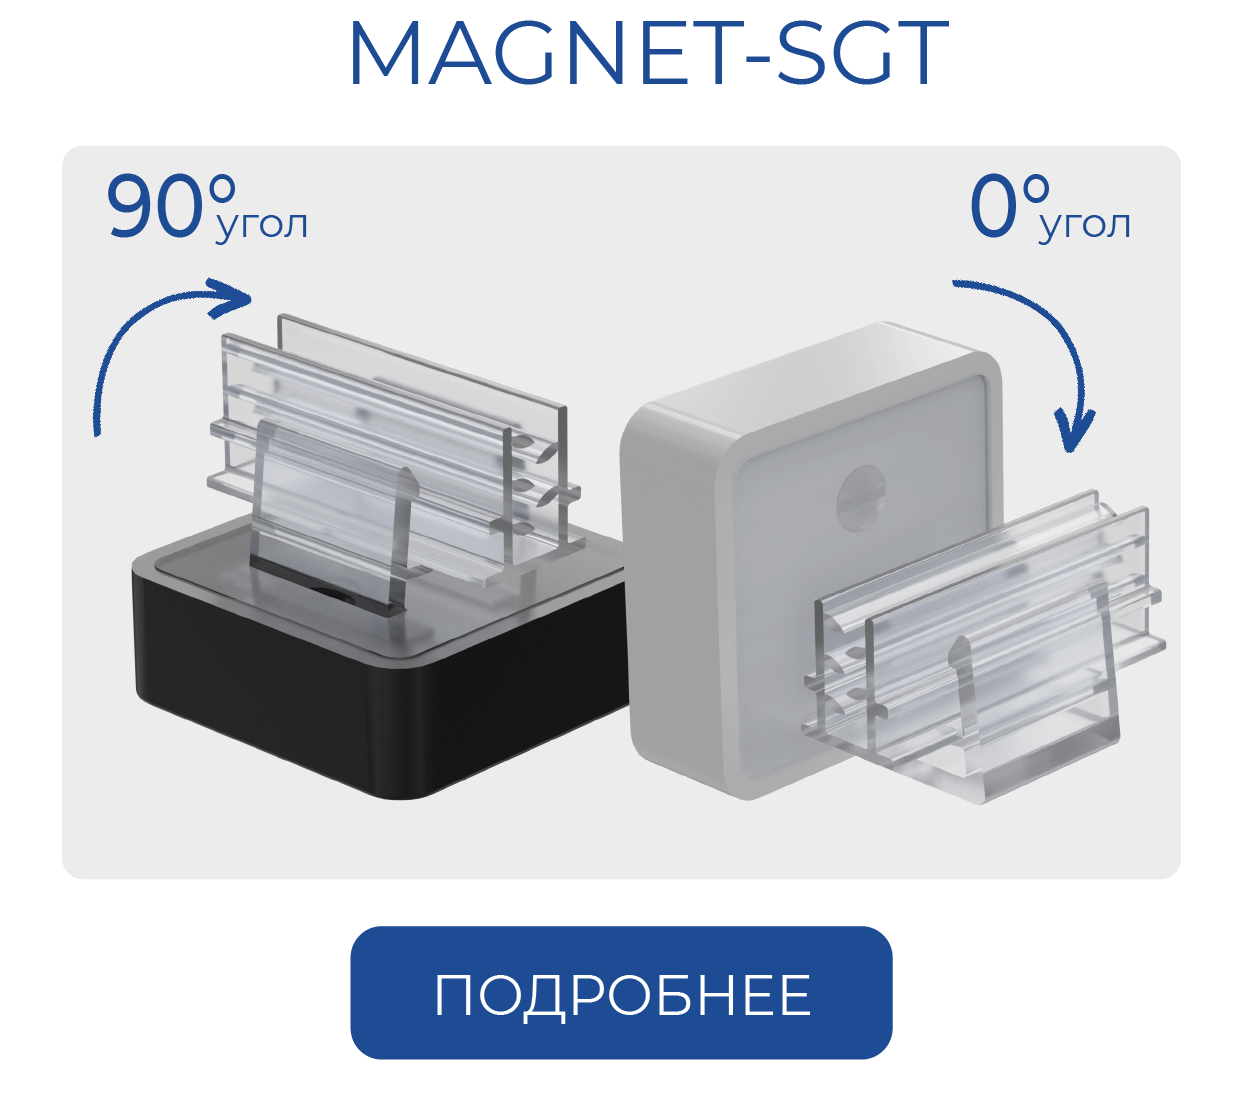 MAGNET-SGT-04.png